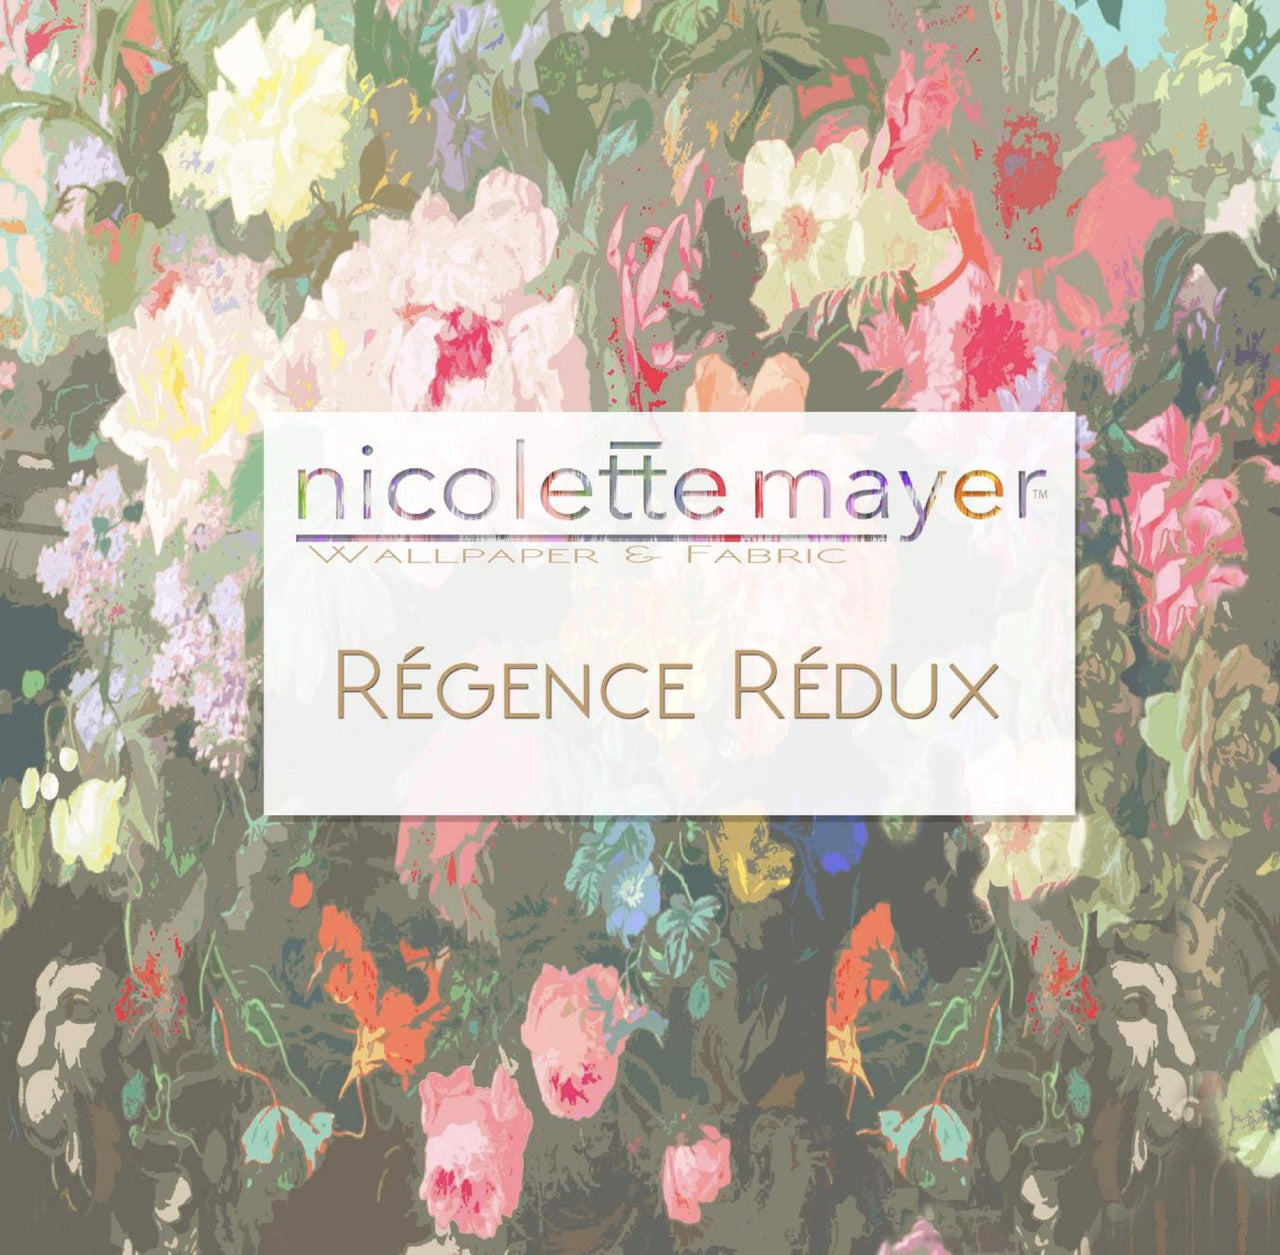 Régence Rédux Wallpaper Book - nicolettemayer.com